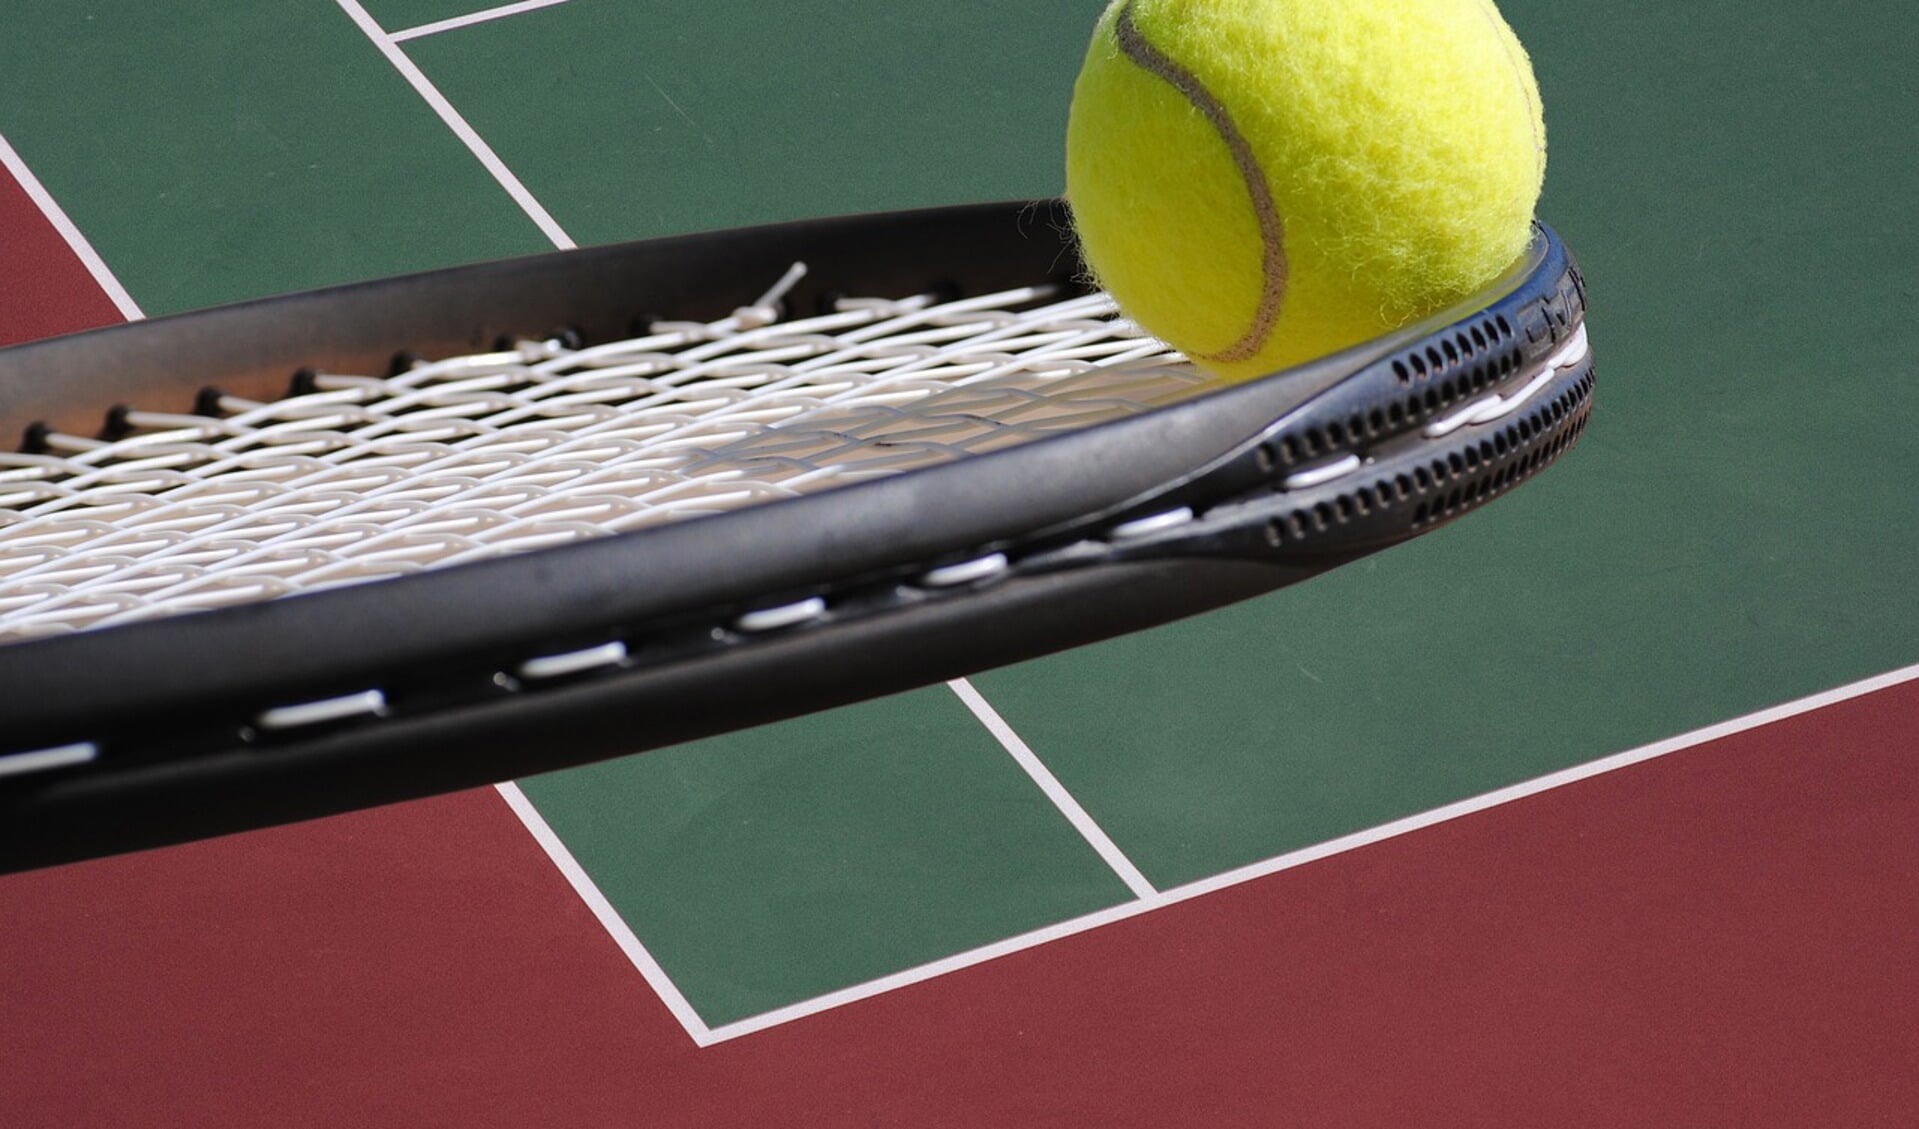 De hal is eigenlijk vooral geschikt voor tennis, waardoor zaalverhuur aan derde partijen niet echt aan de orde is.